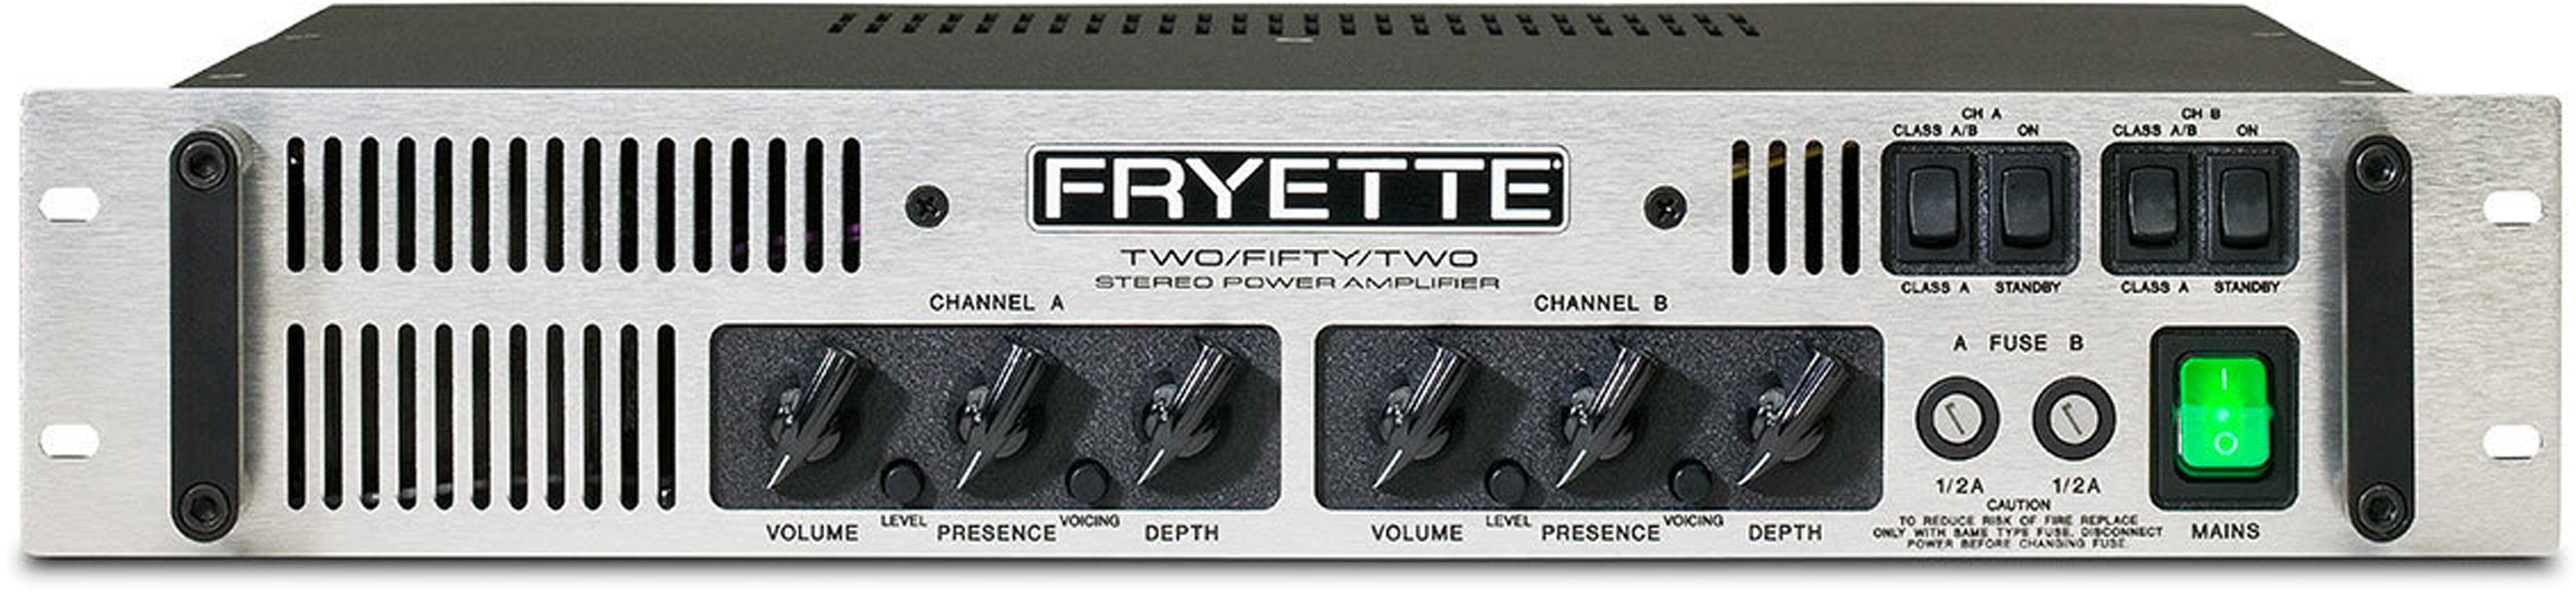 Fryette Two Fifty Two Power Amplifier 124 Watts -  G-2502-S